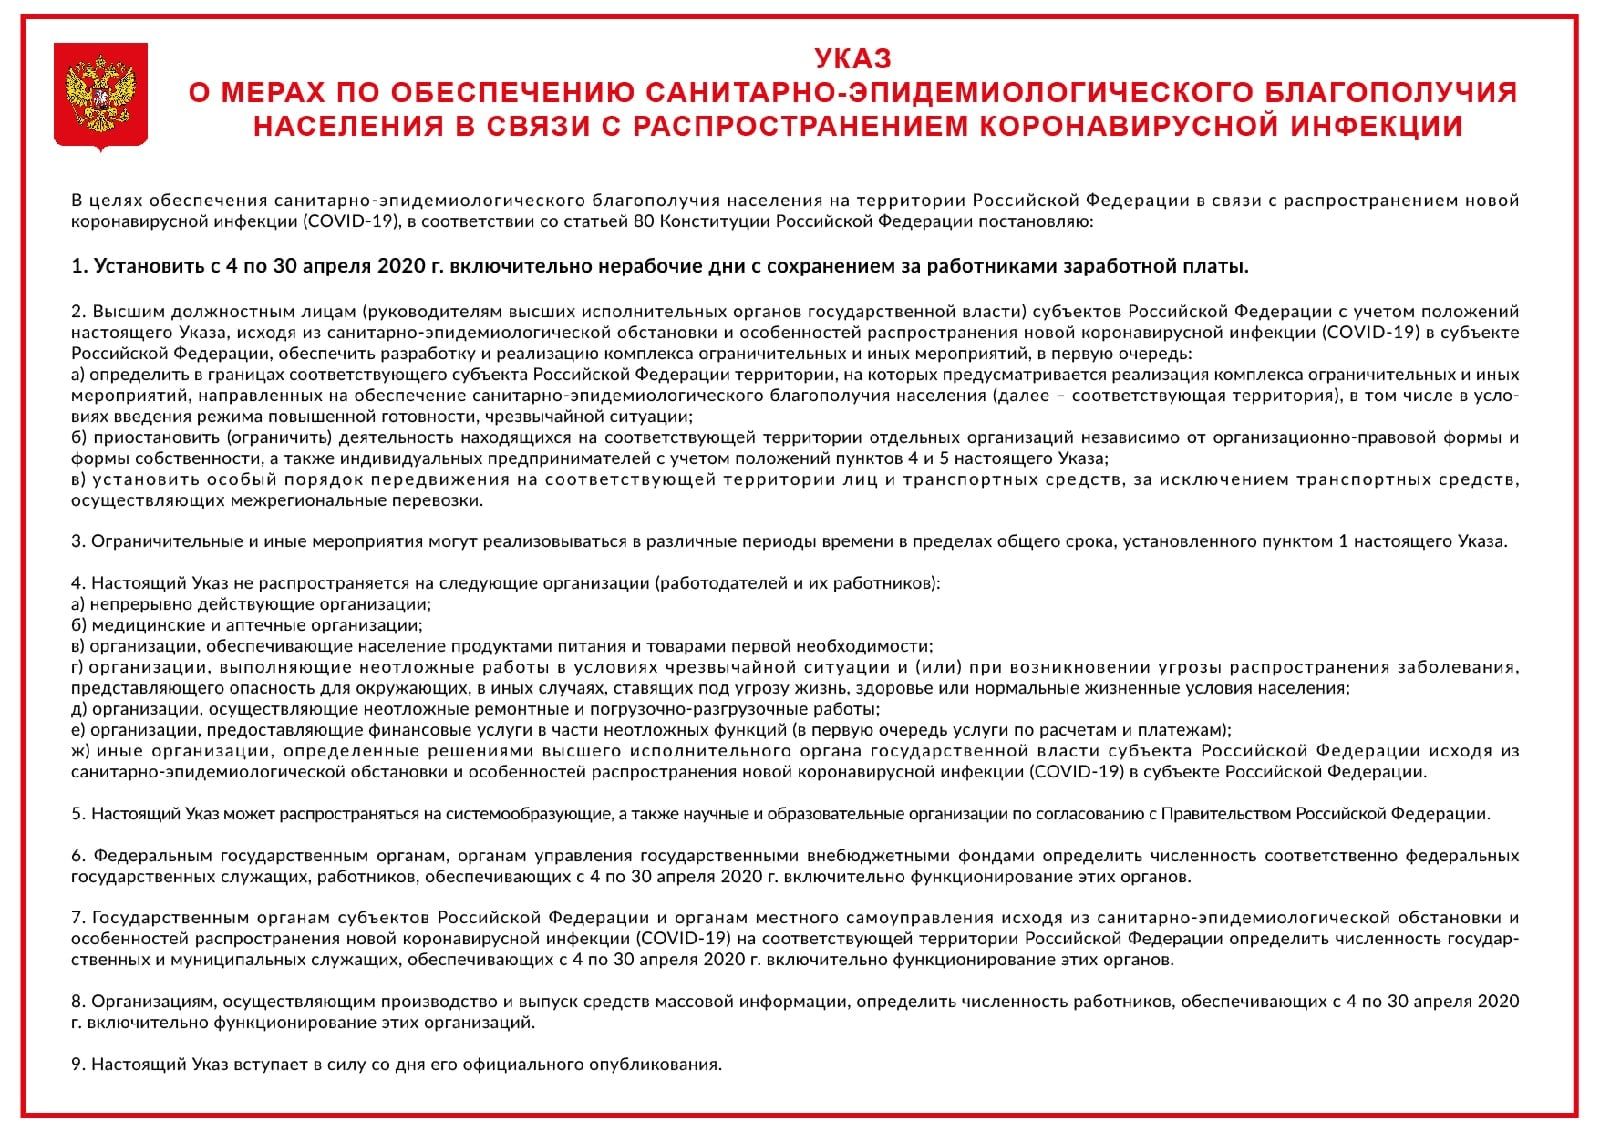 Корпорация ЖБК-1 вошла в список белгородских системообразующих предприятий, которые продолжат работать в условиях карантина